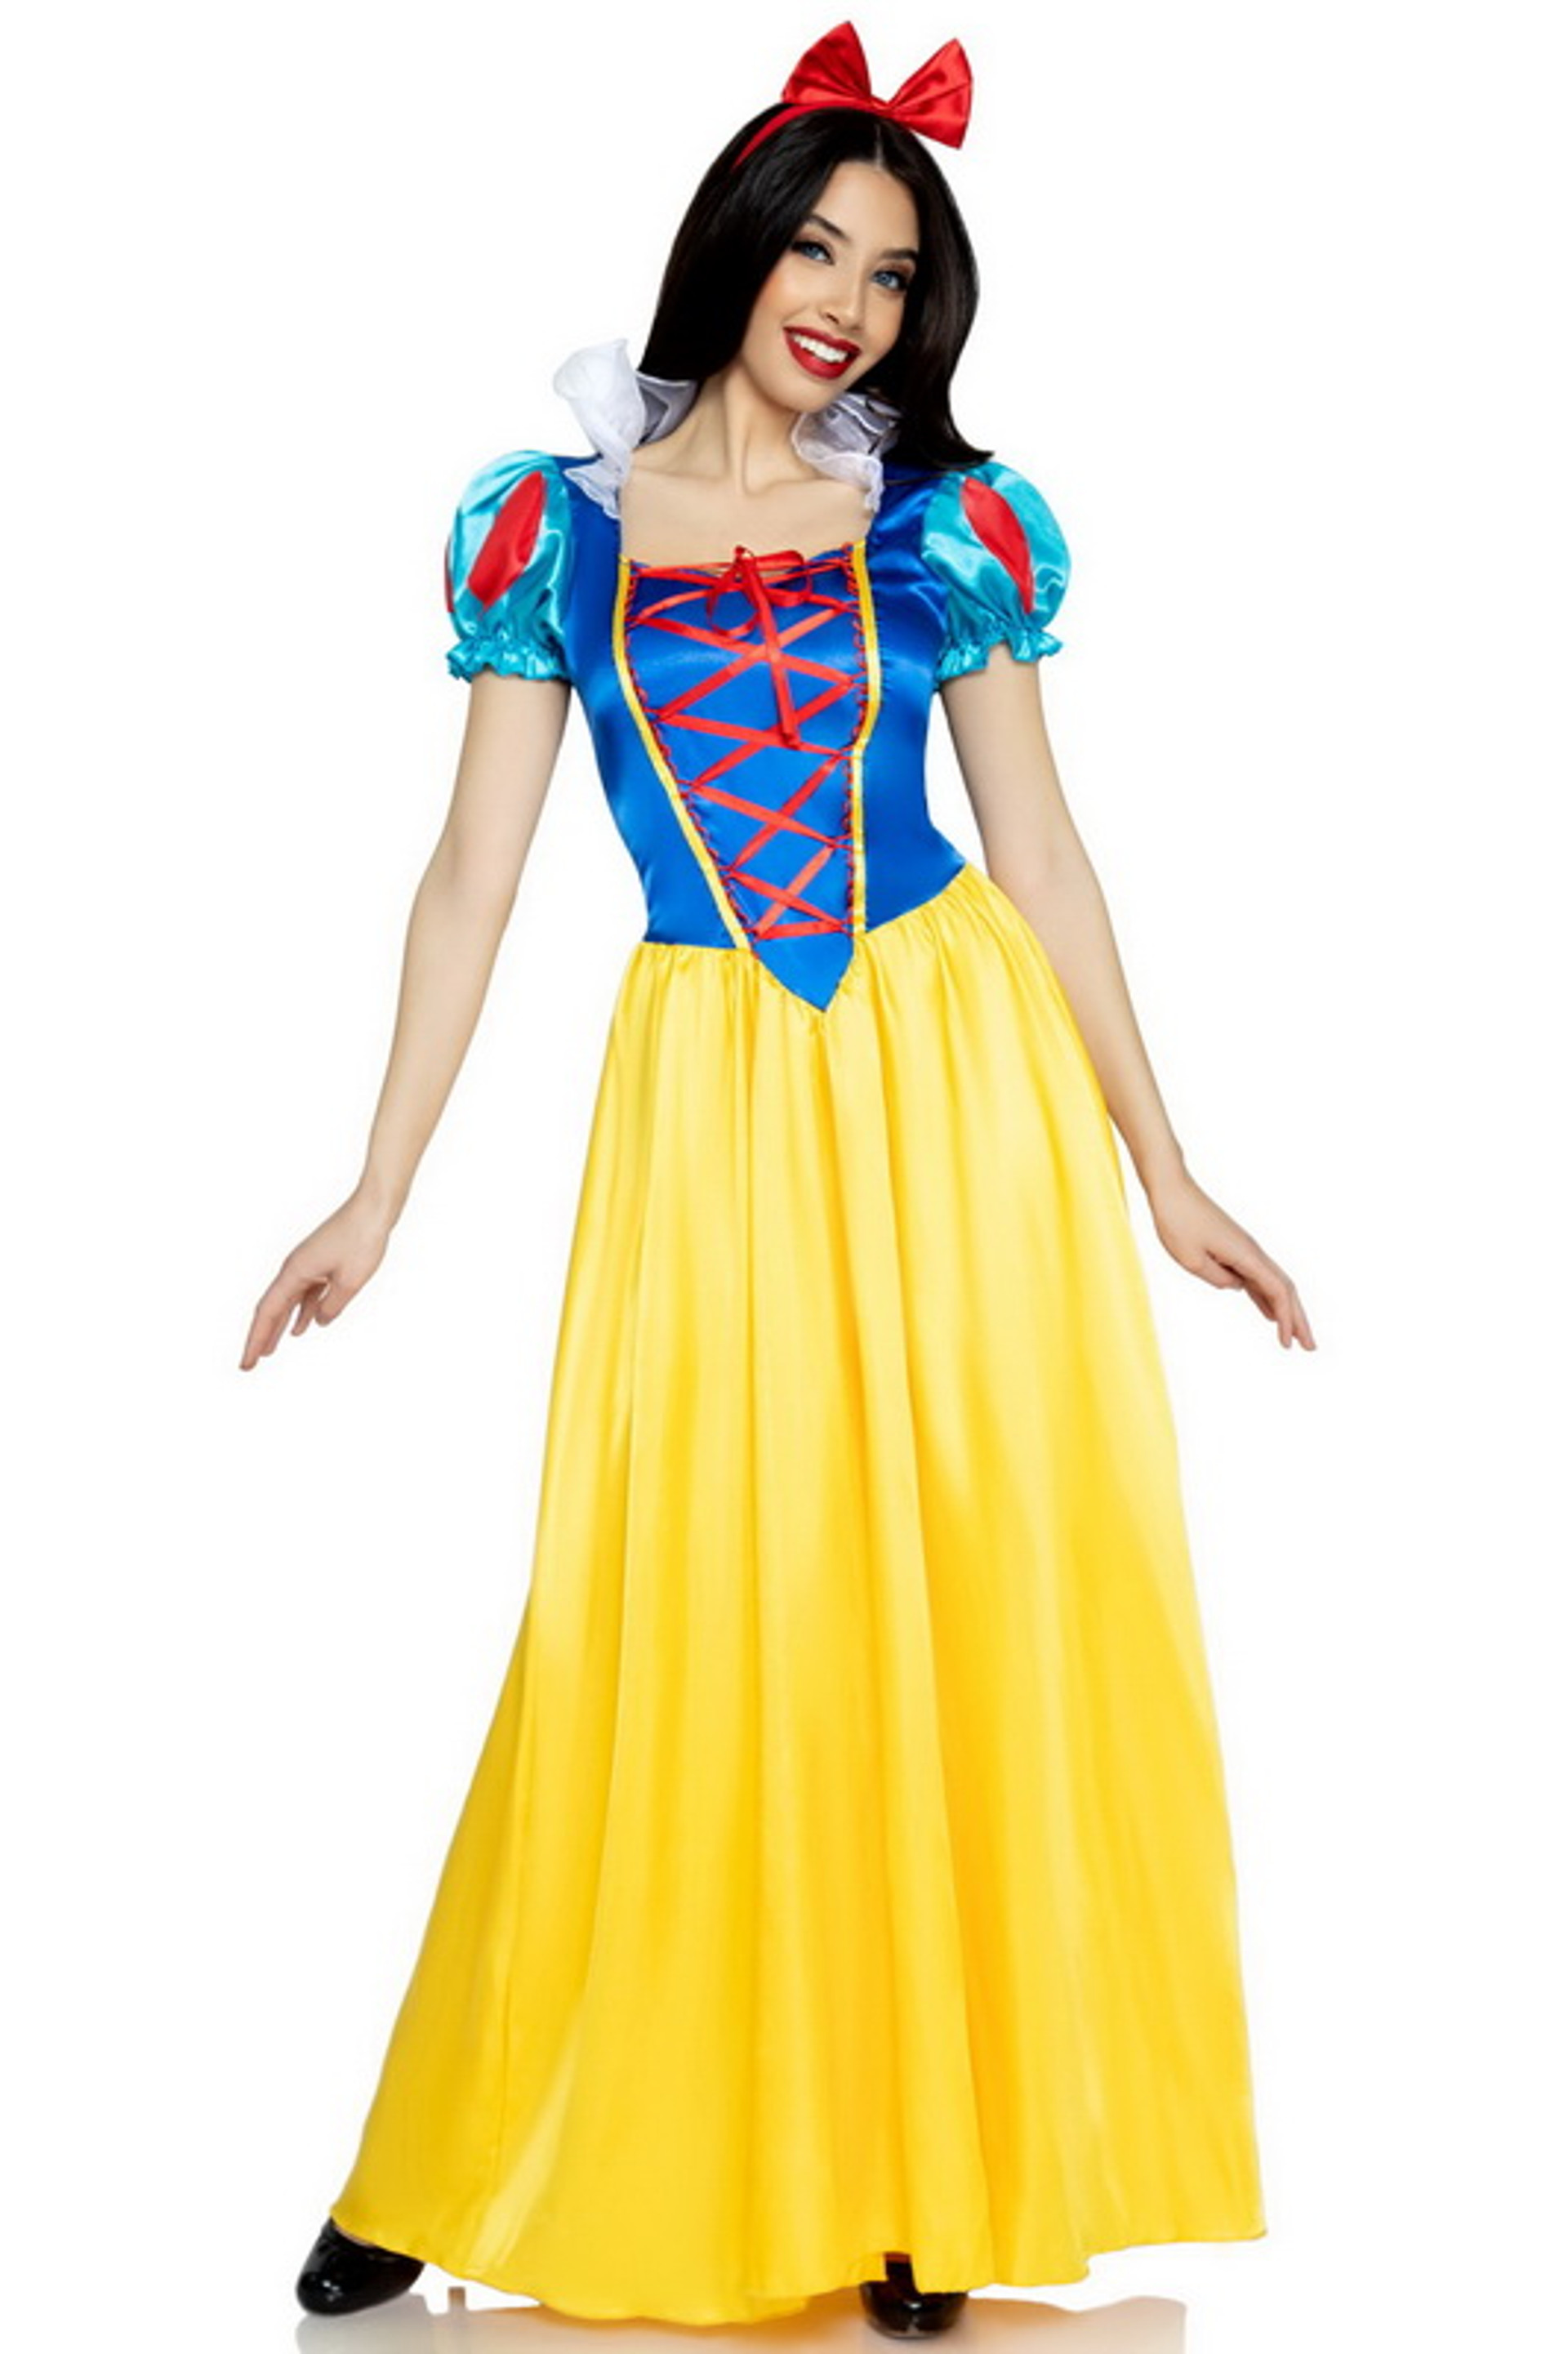 Classic Snow White Costume 71  28595.1663284889 ?c=1